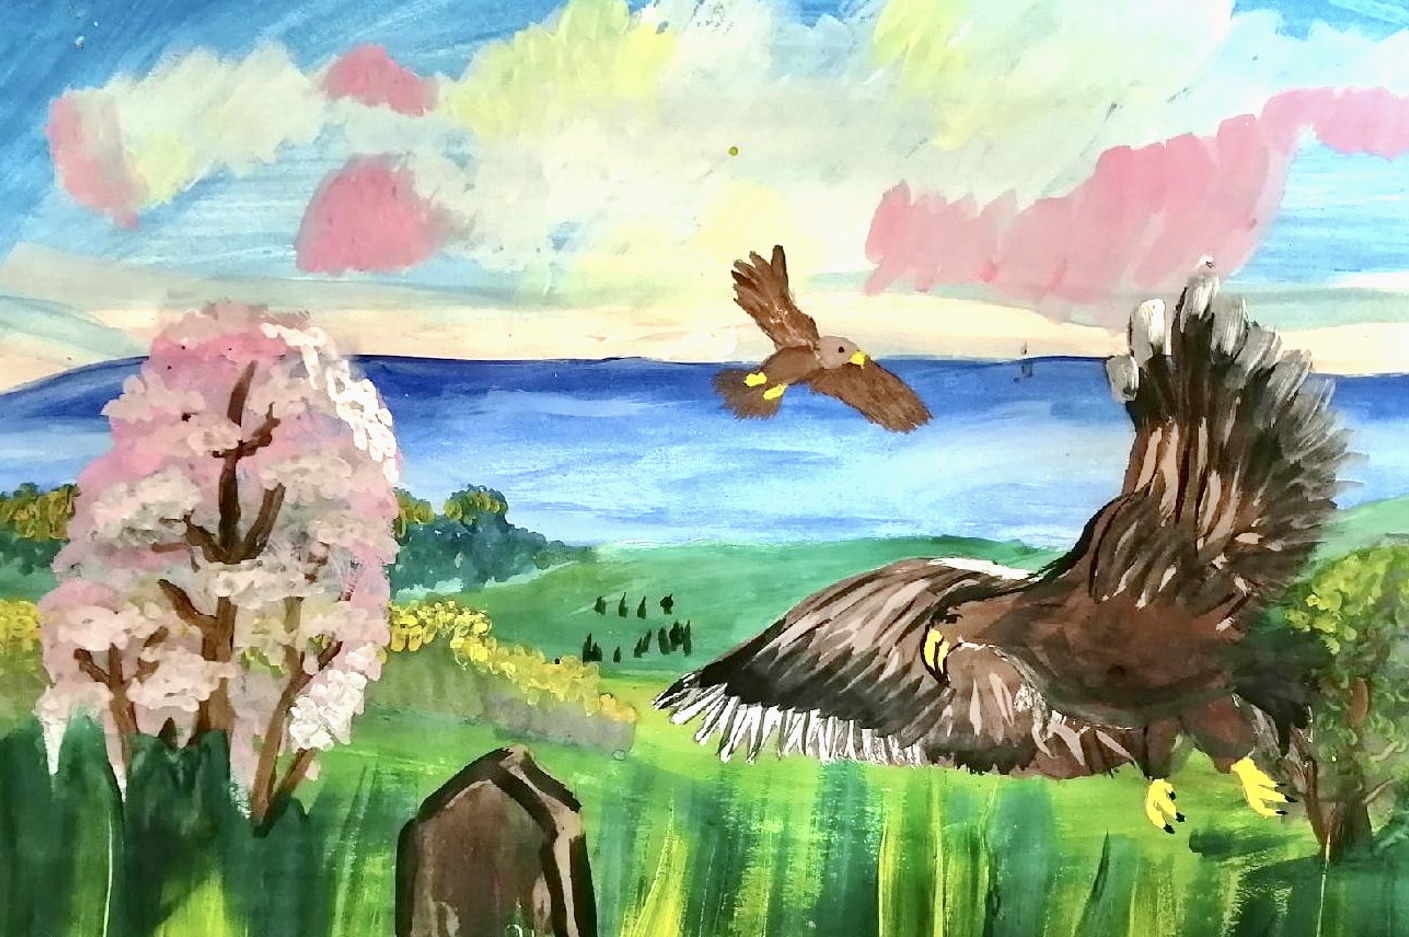 АтомЭнергоСбыт определил победителей конкурса детского рисунка «Лето в моем родном крае» за июль и август